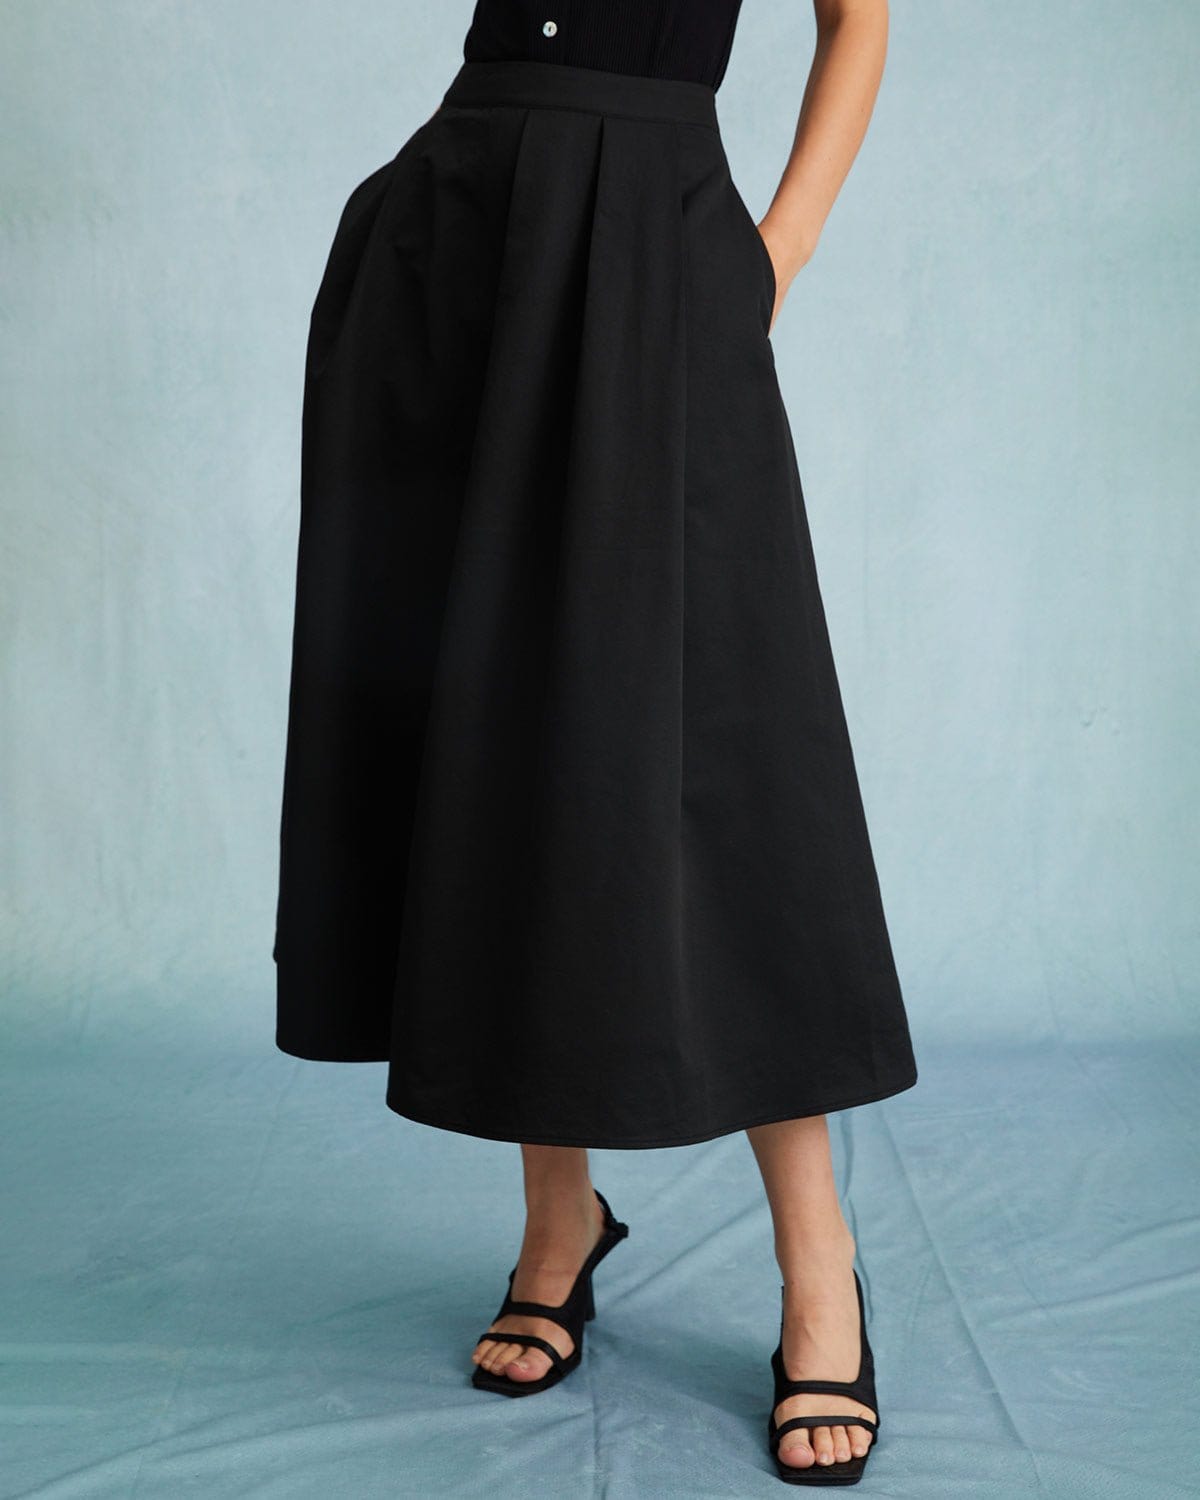 The Black High Waisted Pleated Midi Skirt